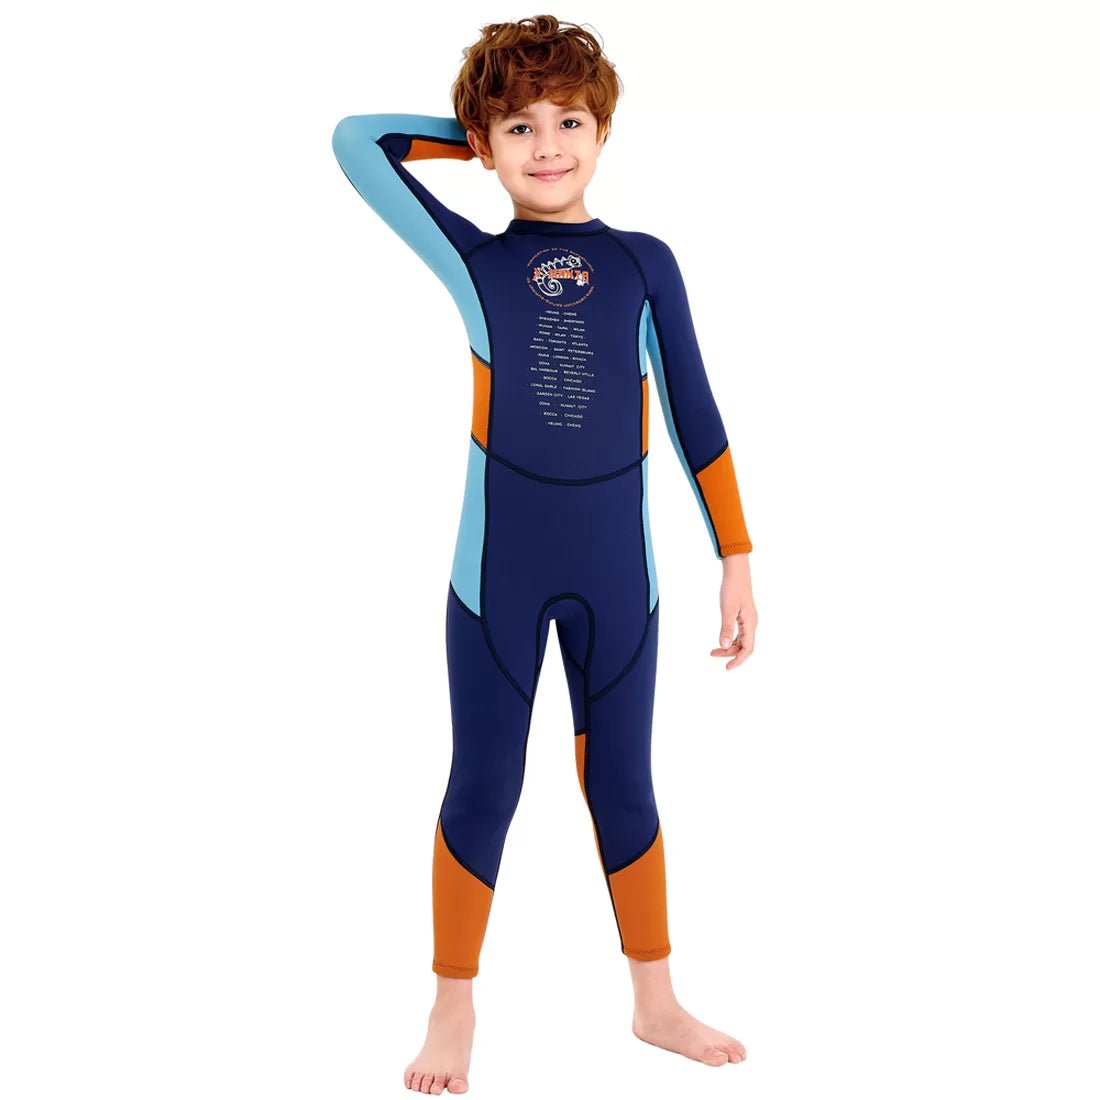 2.55mm Neoprene Full Length Kids Swimsuit, Blue & Bold Orange with UV protection - Little Surprise Box2.55mm Neoprene Full Length Kids Swimsuit, Blue & Bold Orange with UV protection